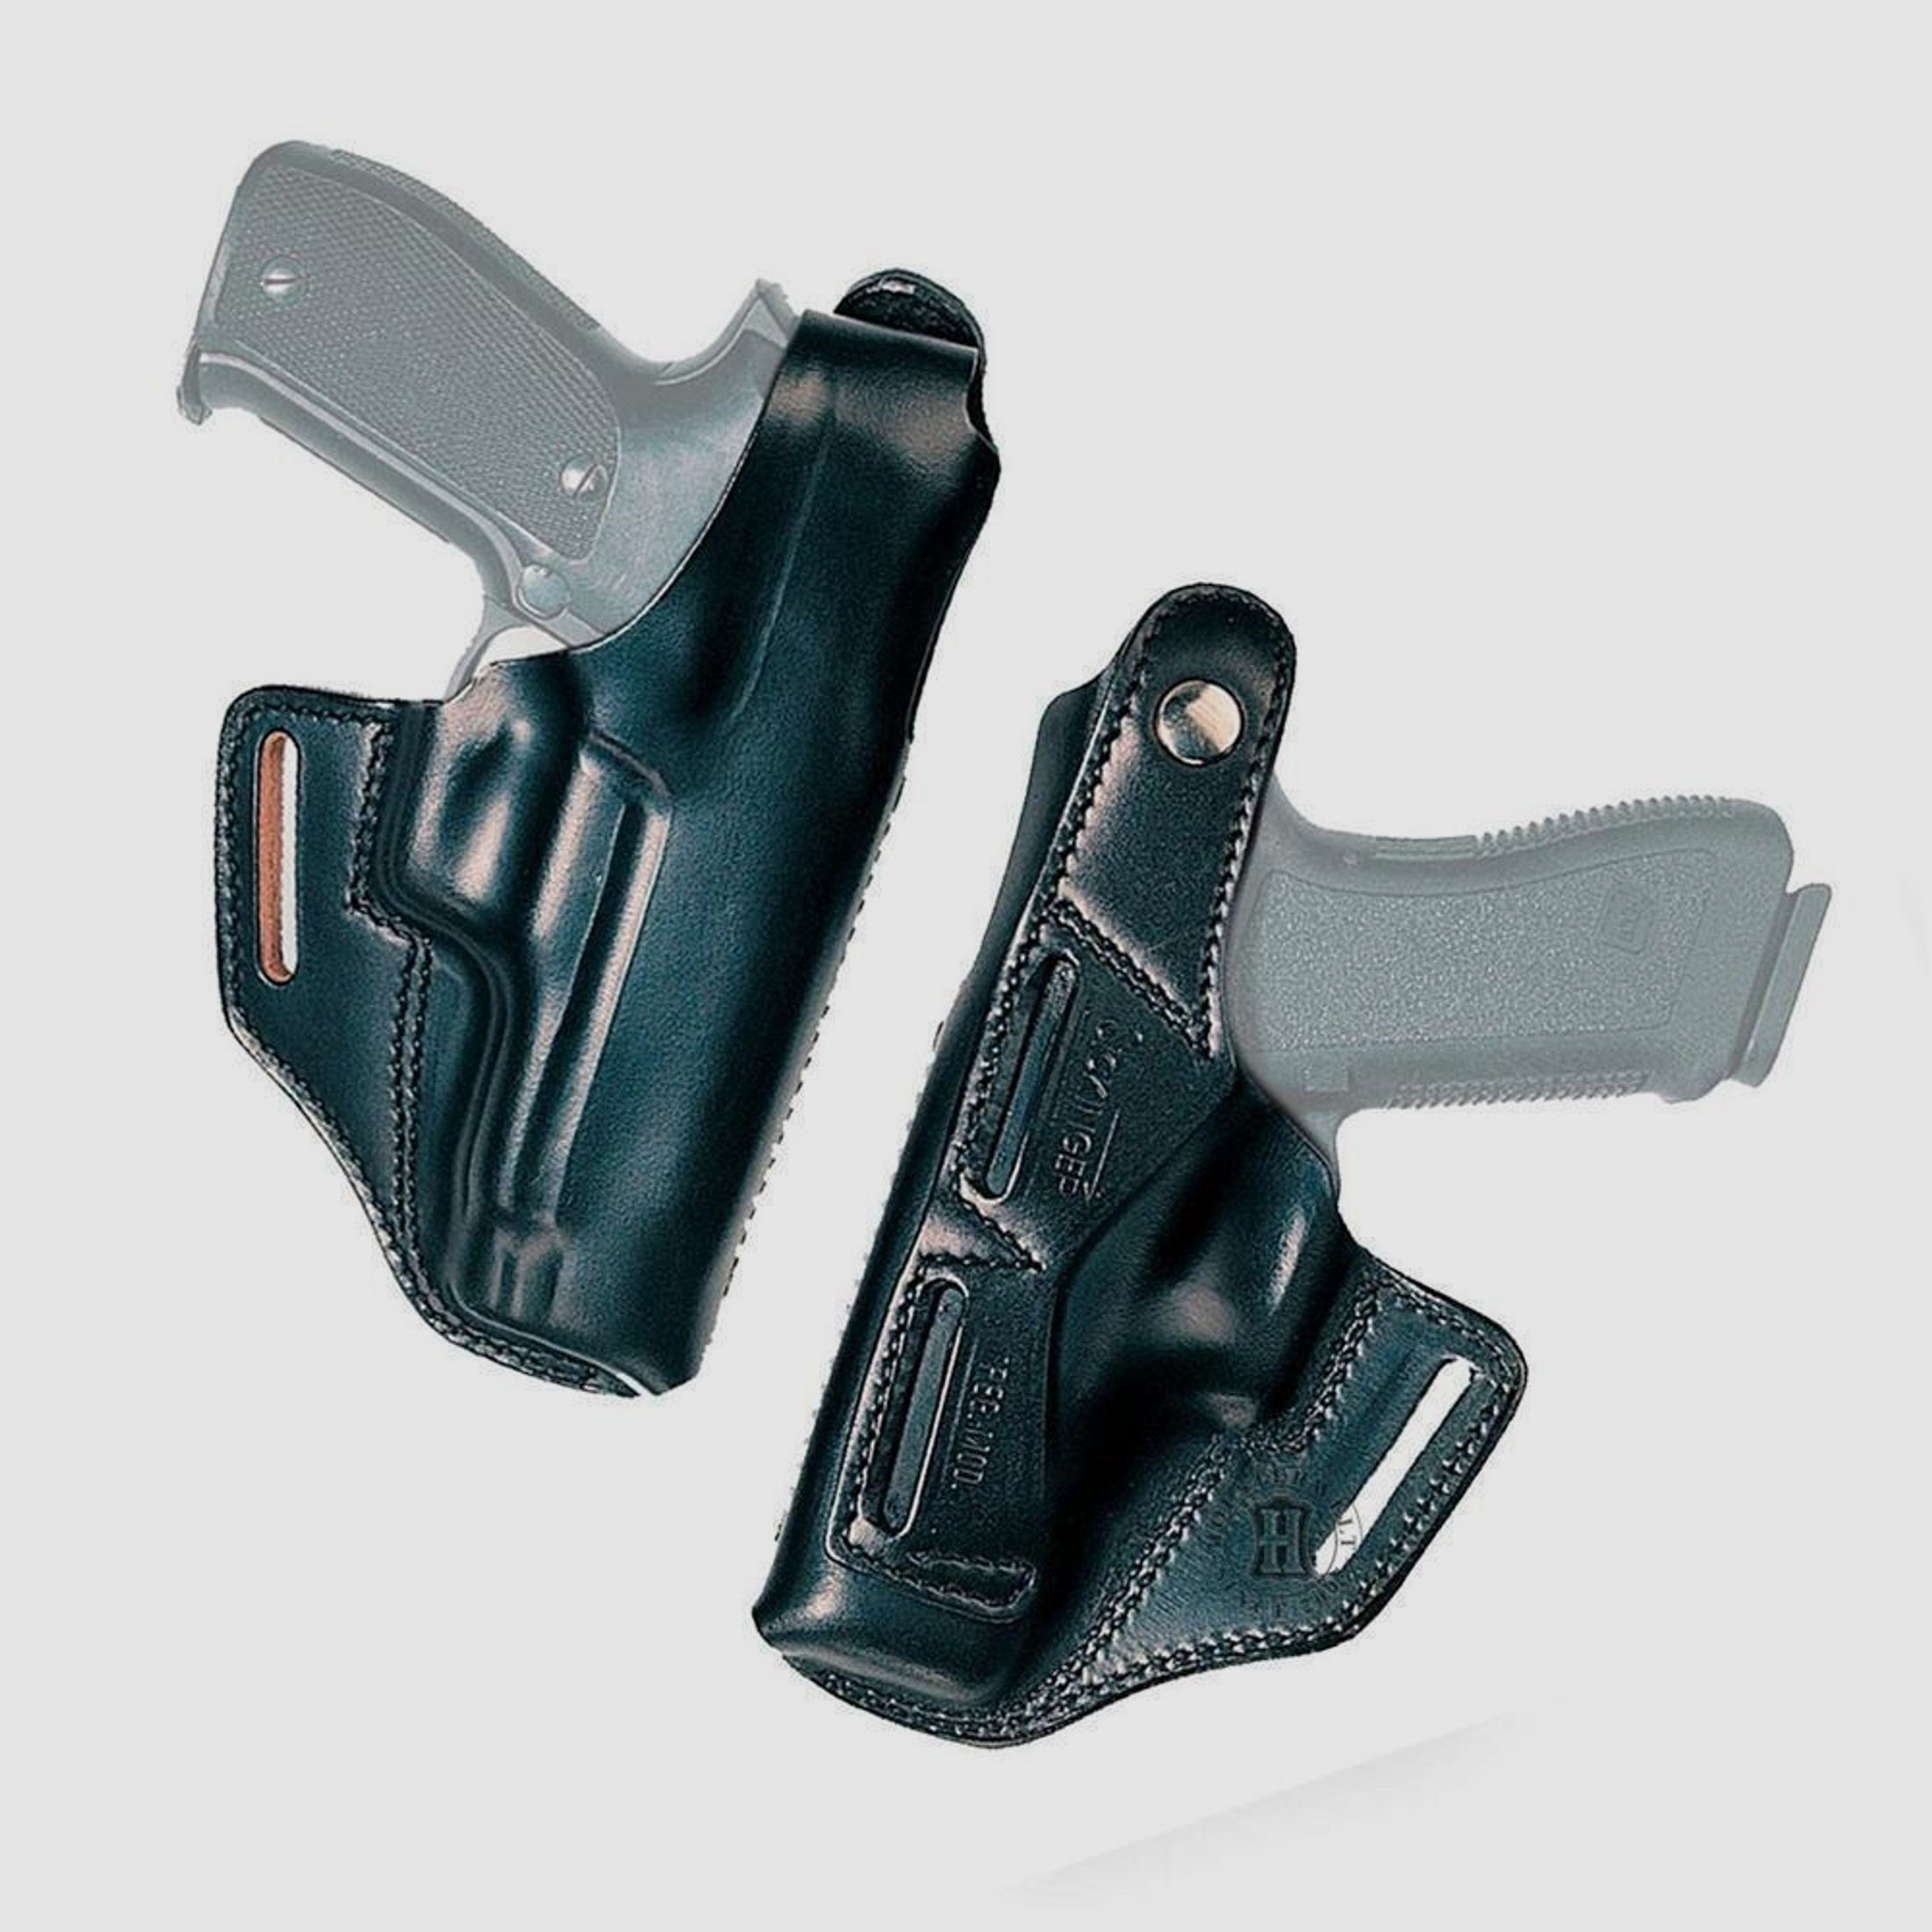 Gürtelholster BELT MASTER Glock 20/21, S&W SIGMA/F, Zoraki 917-Rechtshänder-Schwarz